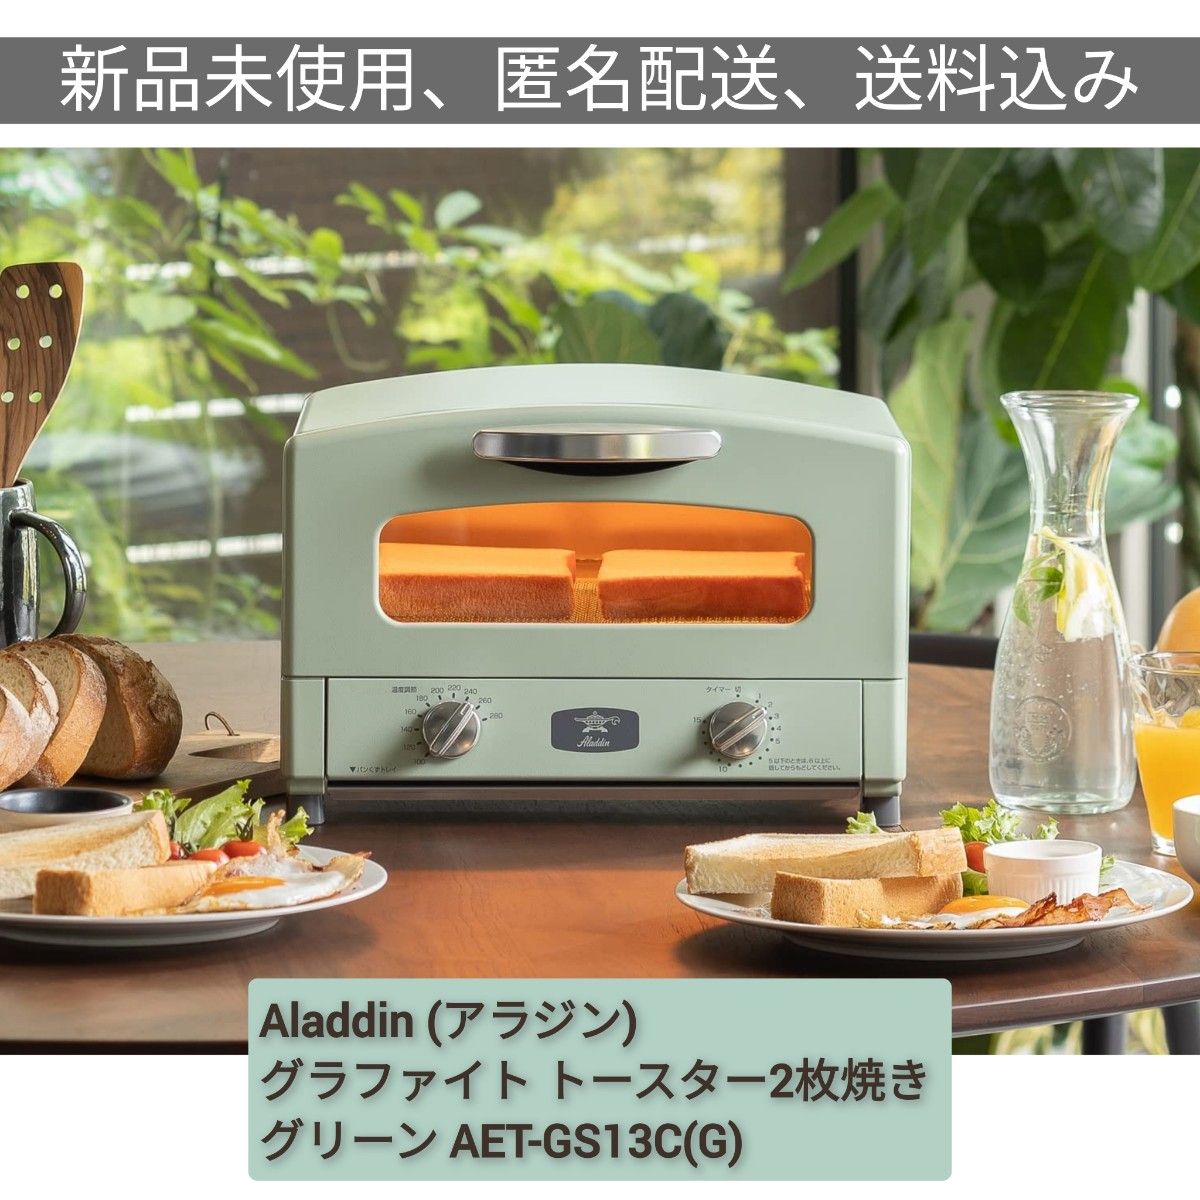 【新品未使用】Aladdin アラジン グラファイト トースター 2枚焼き グリーン AET-GS13C(G)